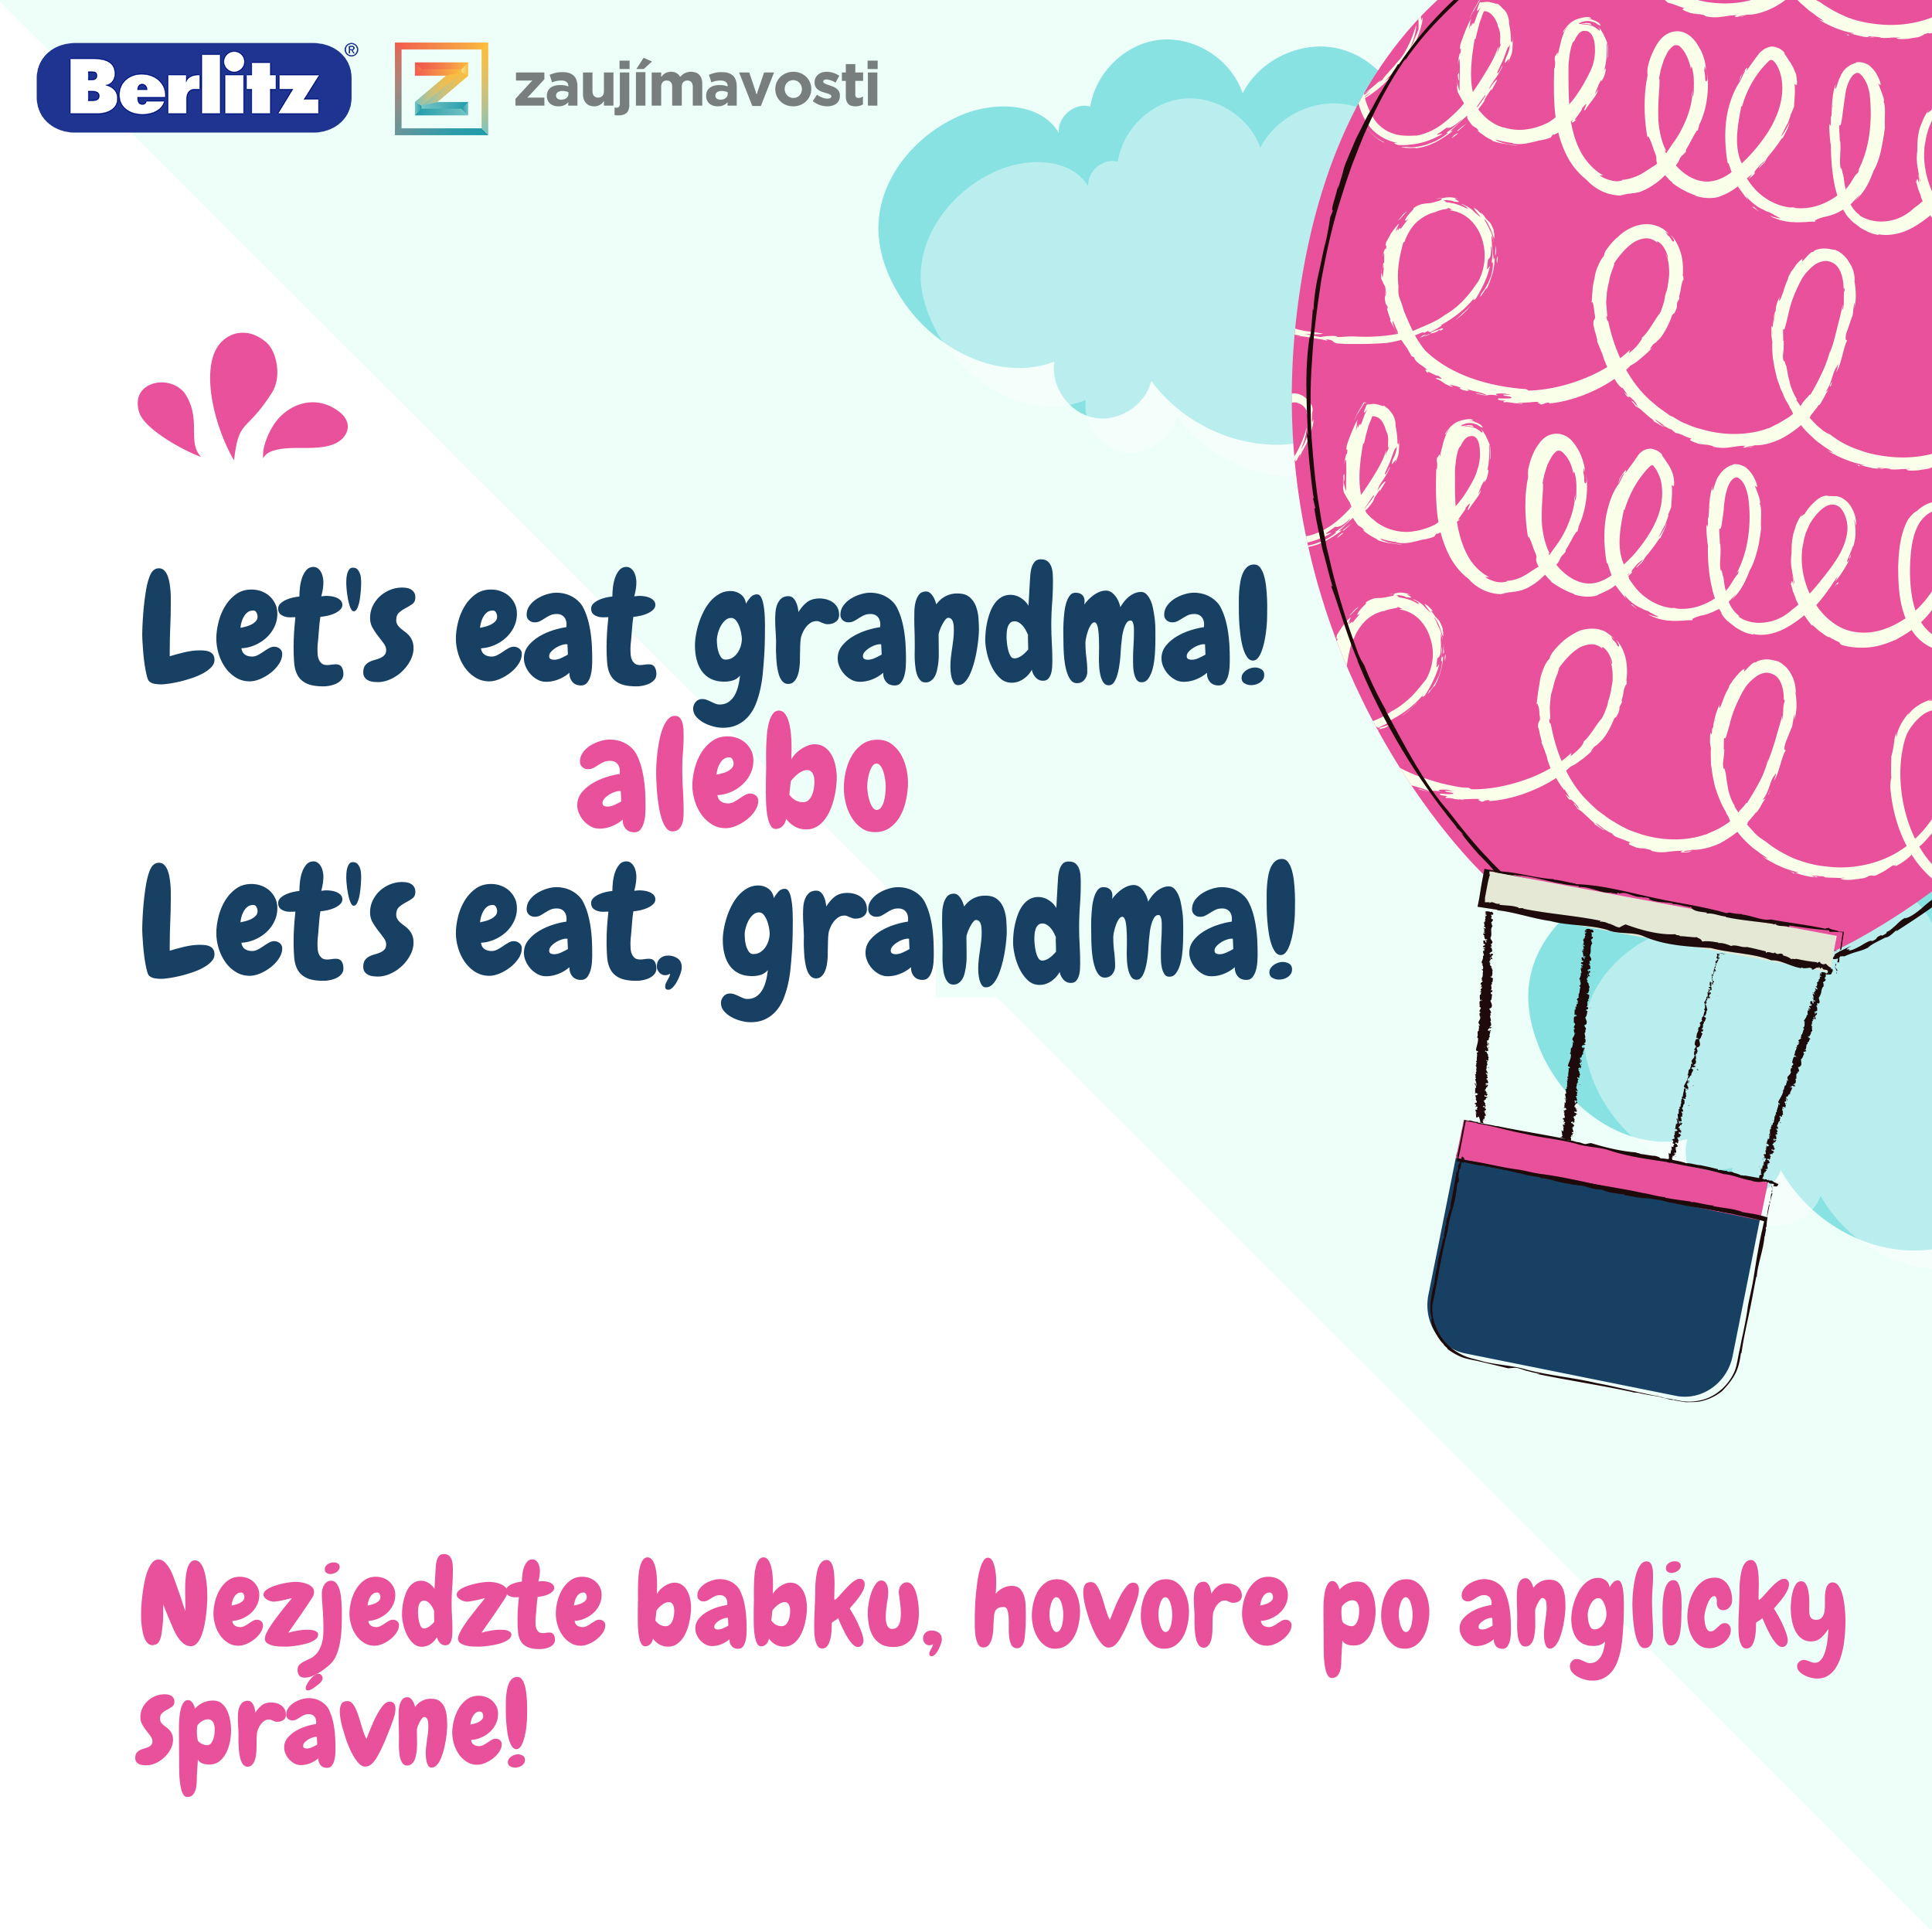 Let's eat grandma aleboLet's eat, gradnma